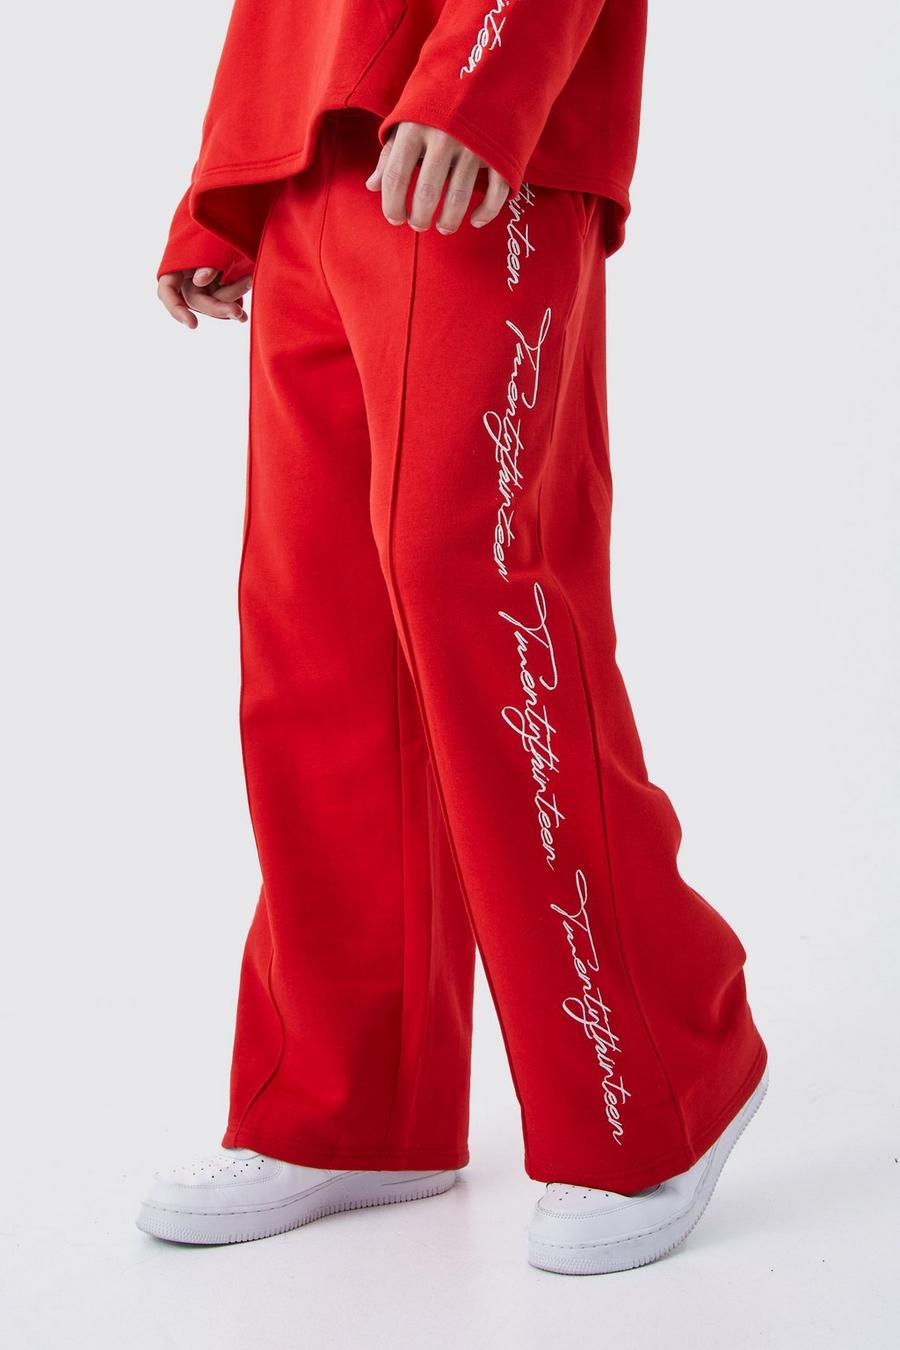 Pantalón deportivo de pernera ancha con bordado y filo sin acabar, Red